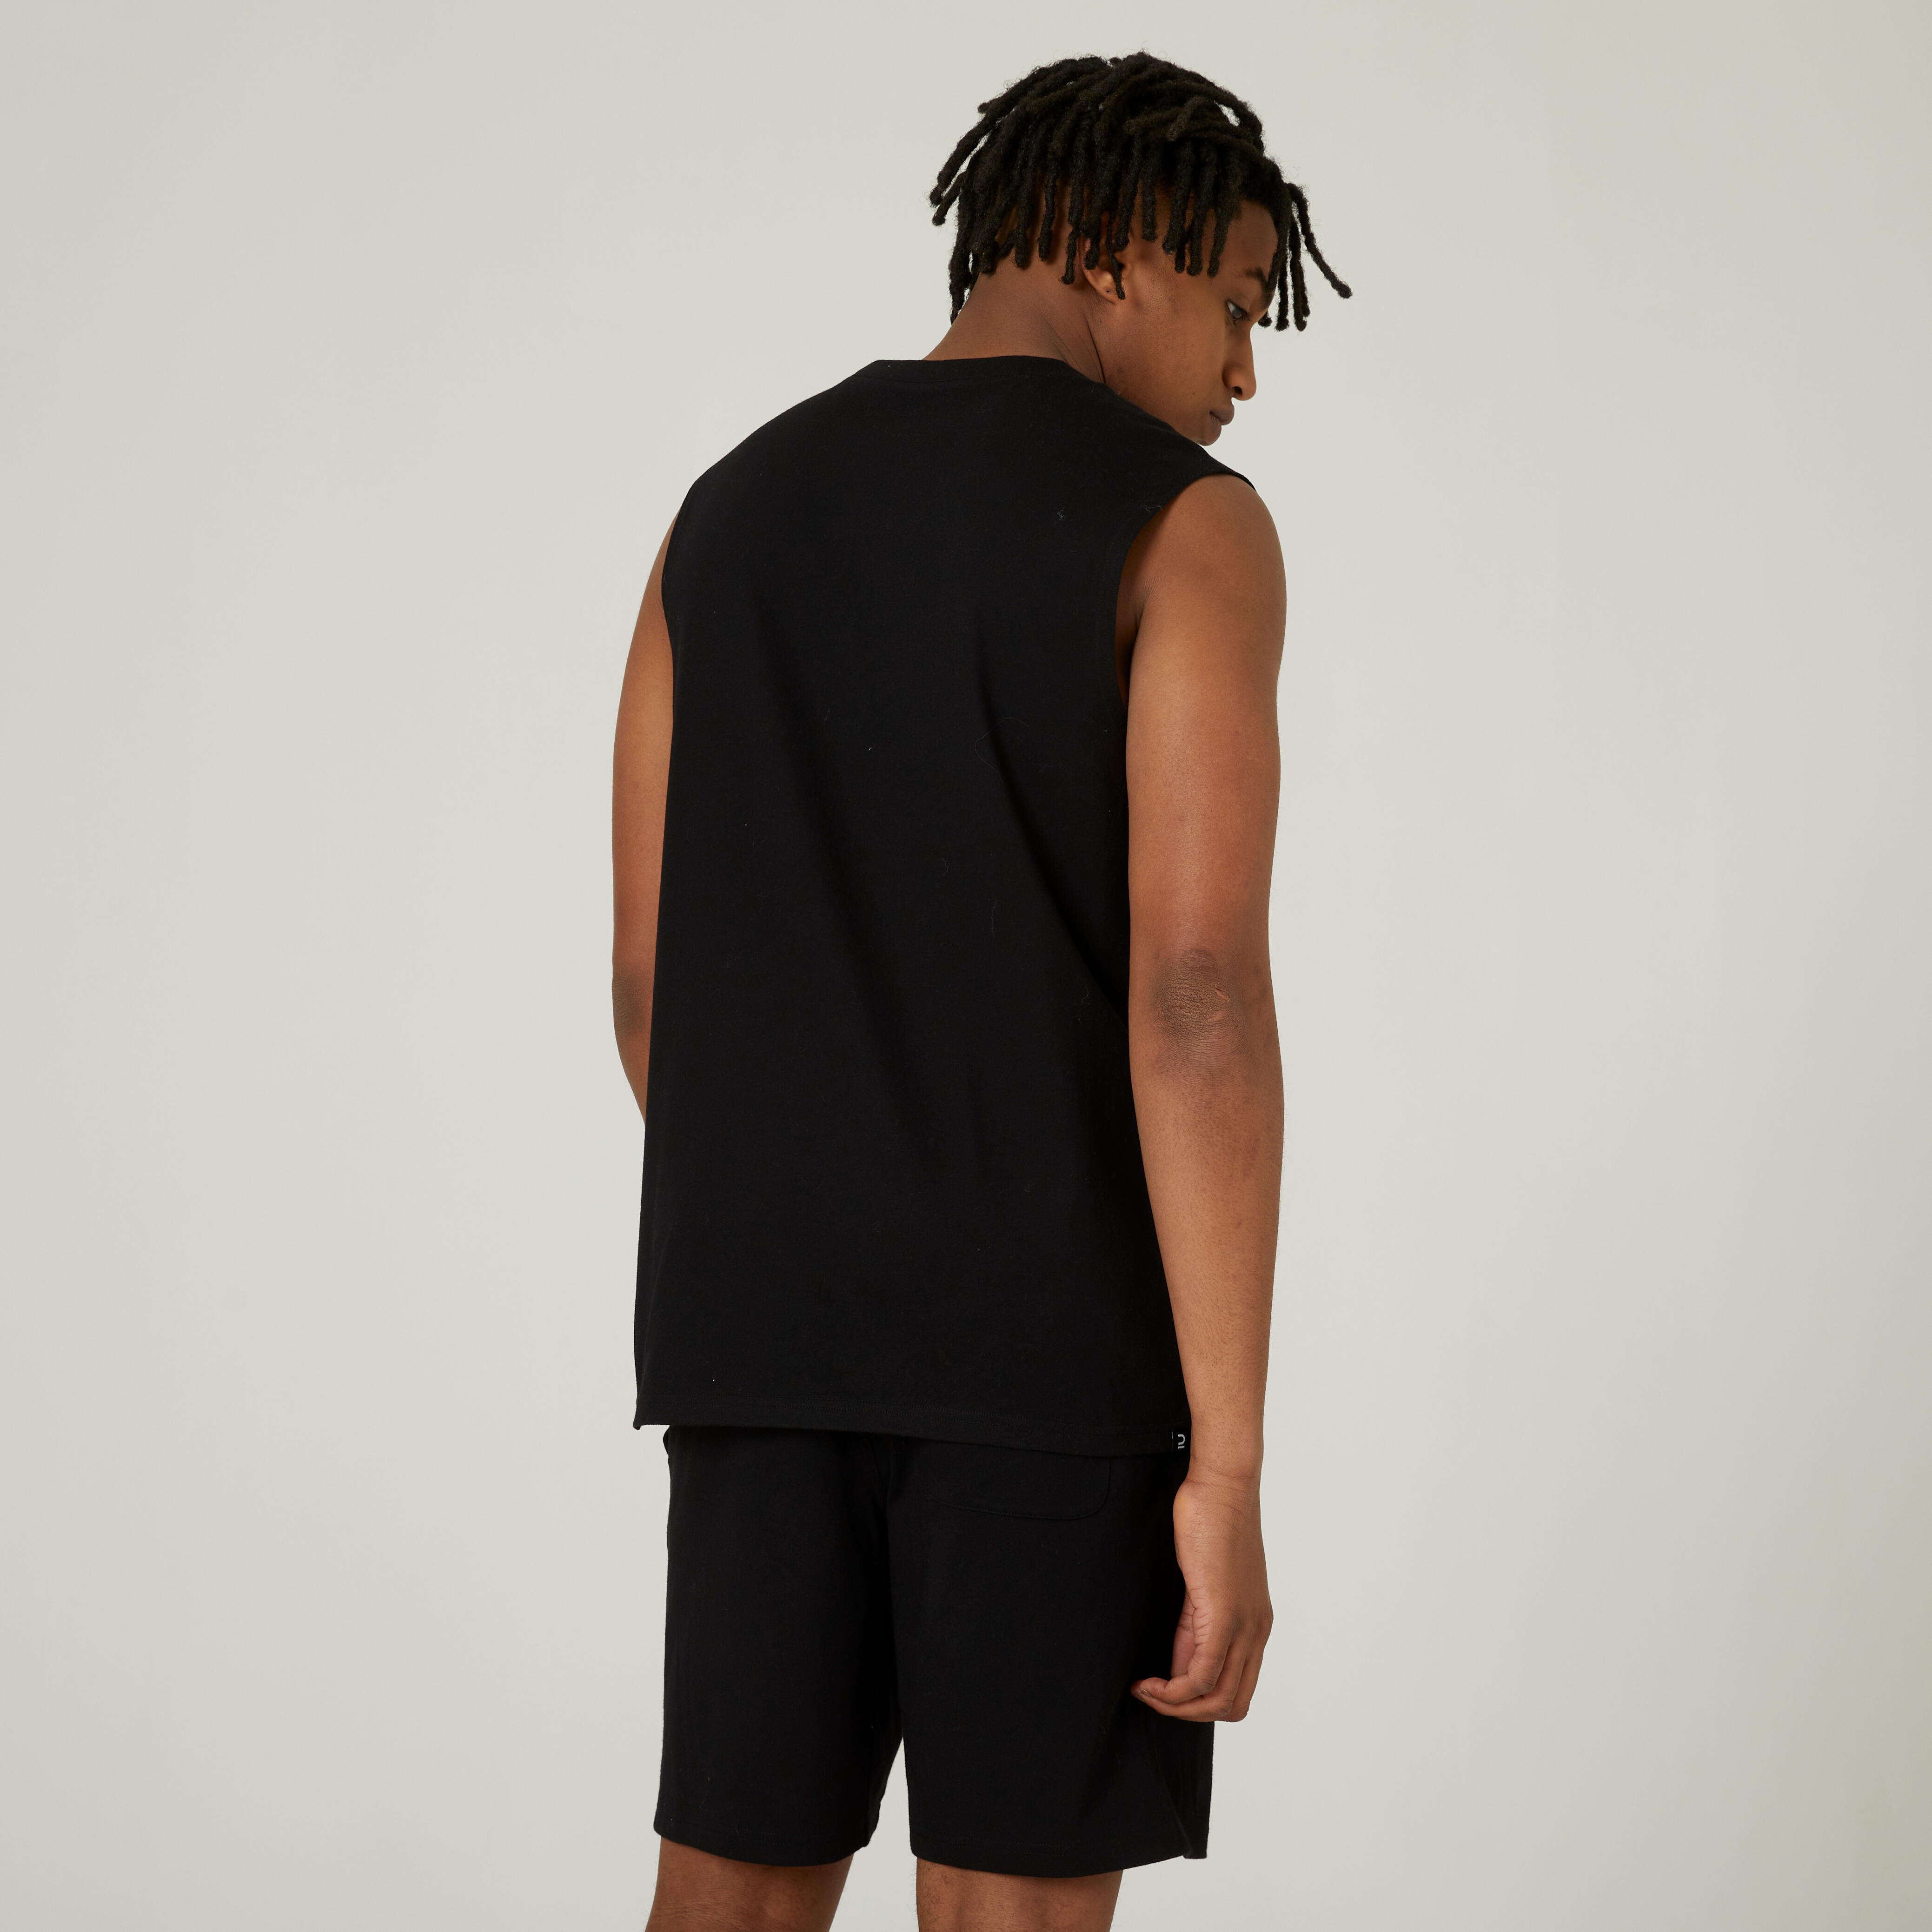 Camisole de sport homme – 500 noir - DOMYOS